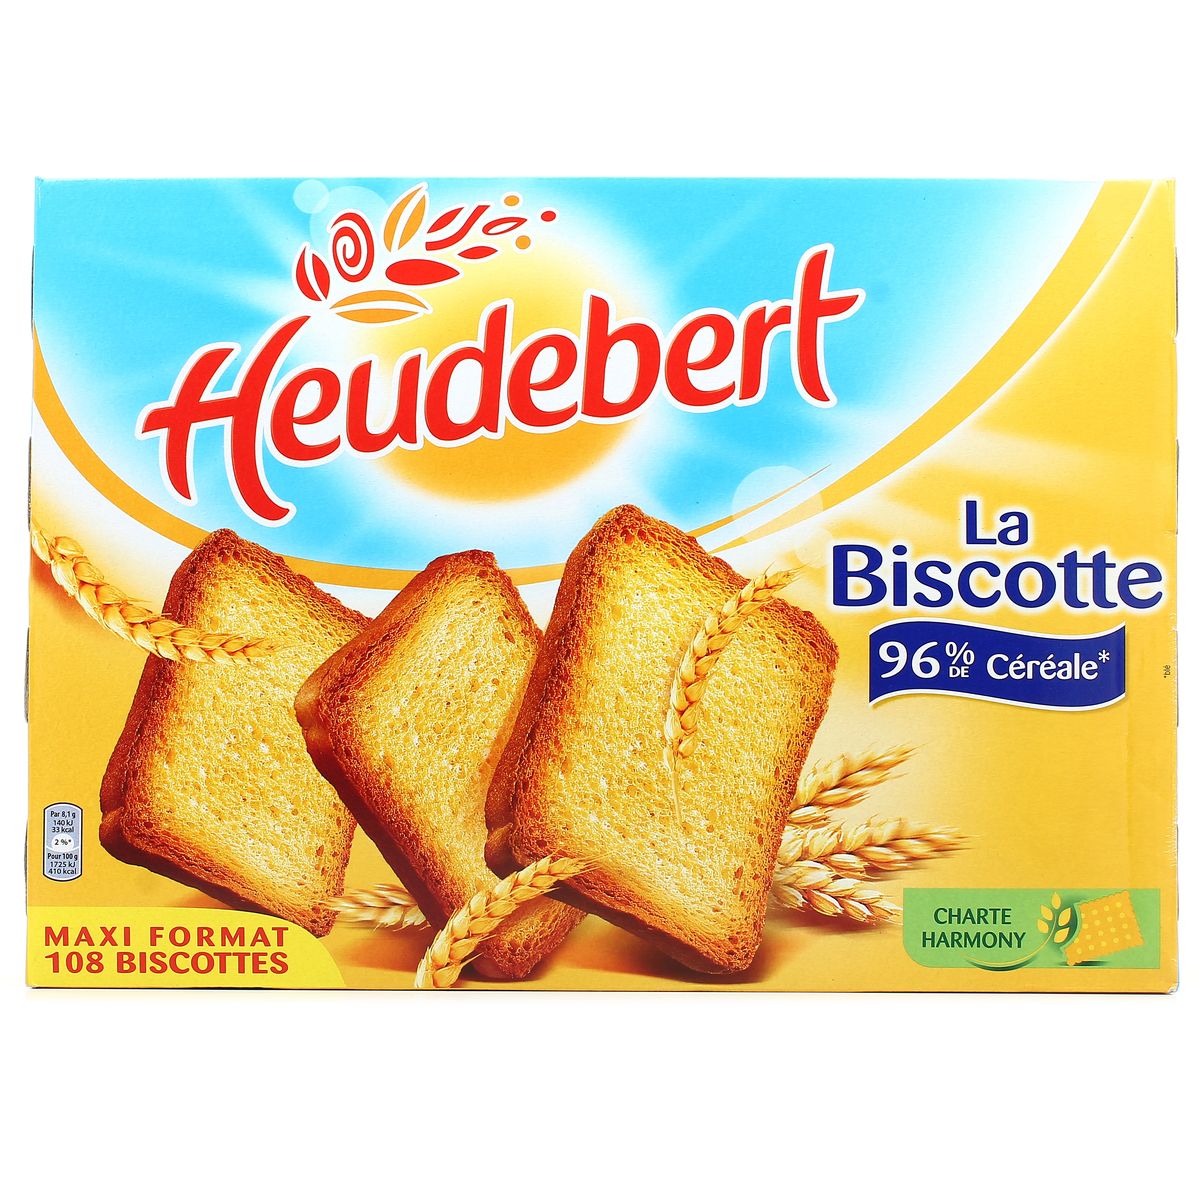 Biscotte à la farine de blé complet, Heudebert (2 x 16, 280 g)